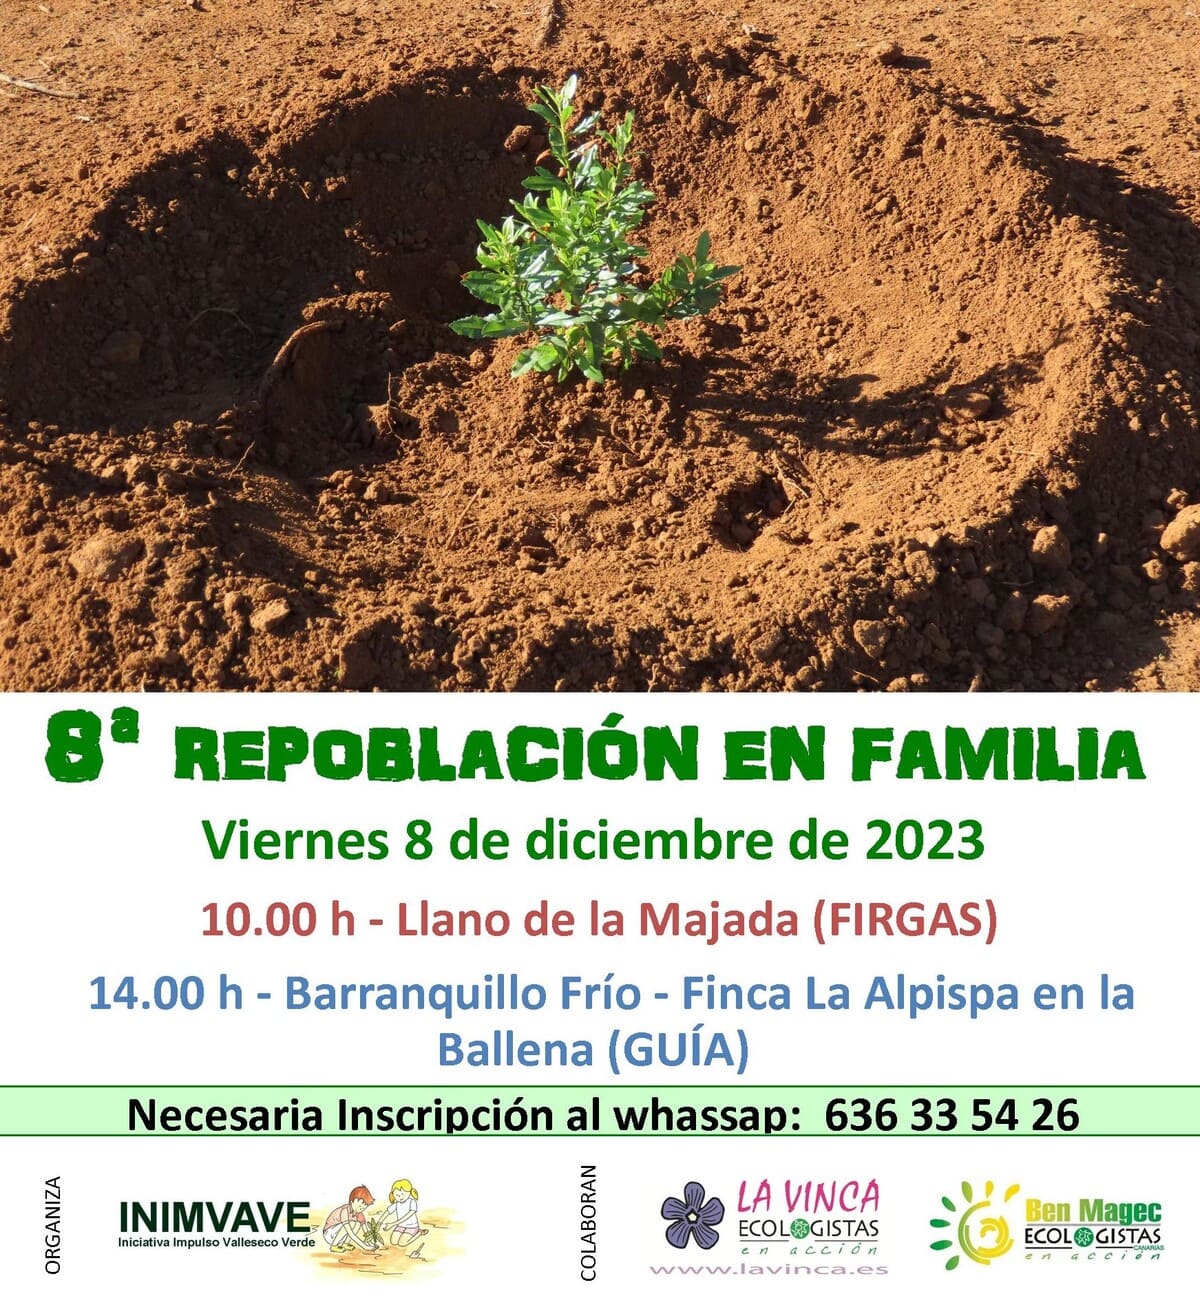 El viernes 8 de diciembre se llevarán a cabo dos Repoblaciones Forestales en Familia en Firgas y Guía